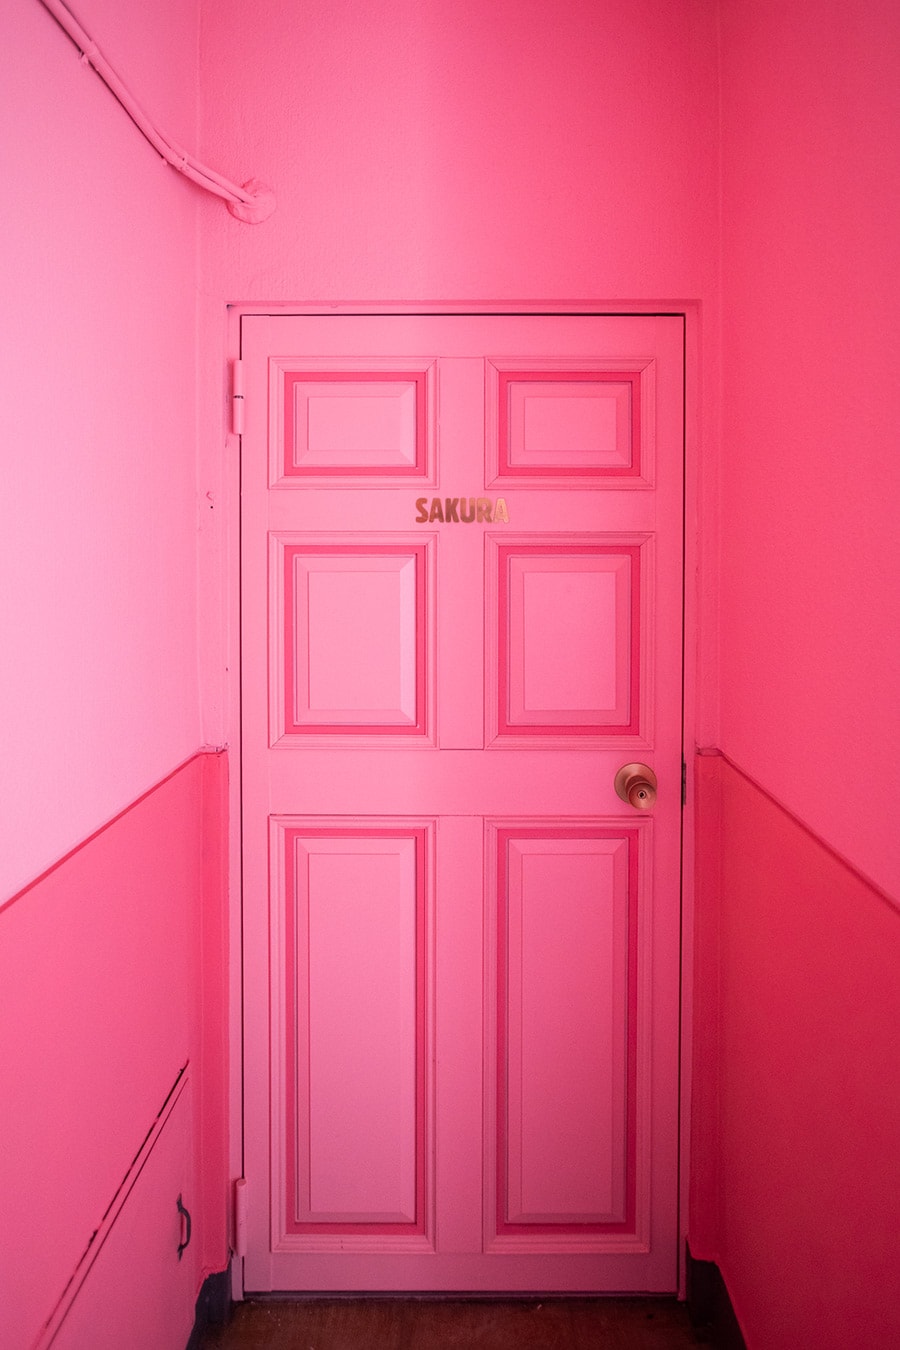 「SAKURA」の文字が入ったピンクのドアでお出迎え。